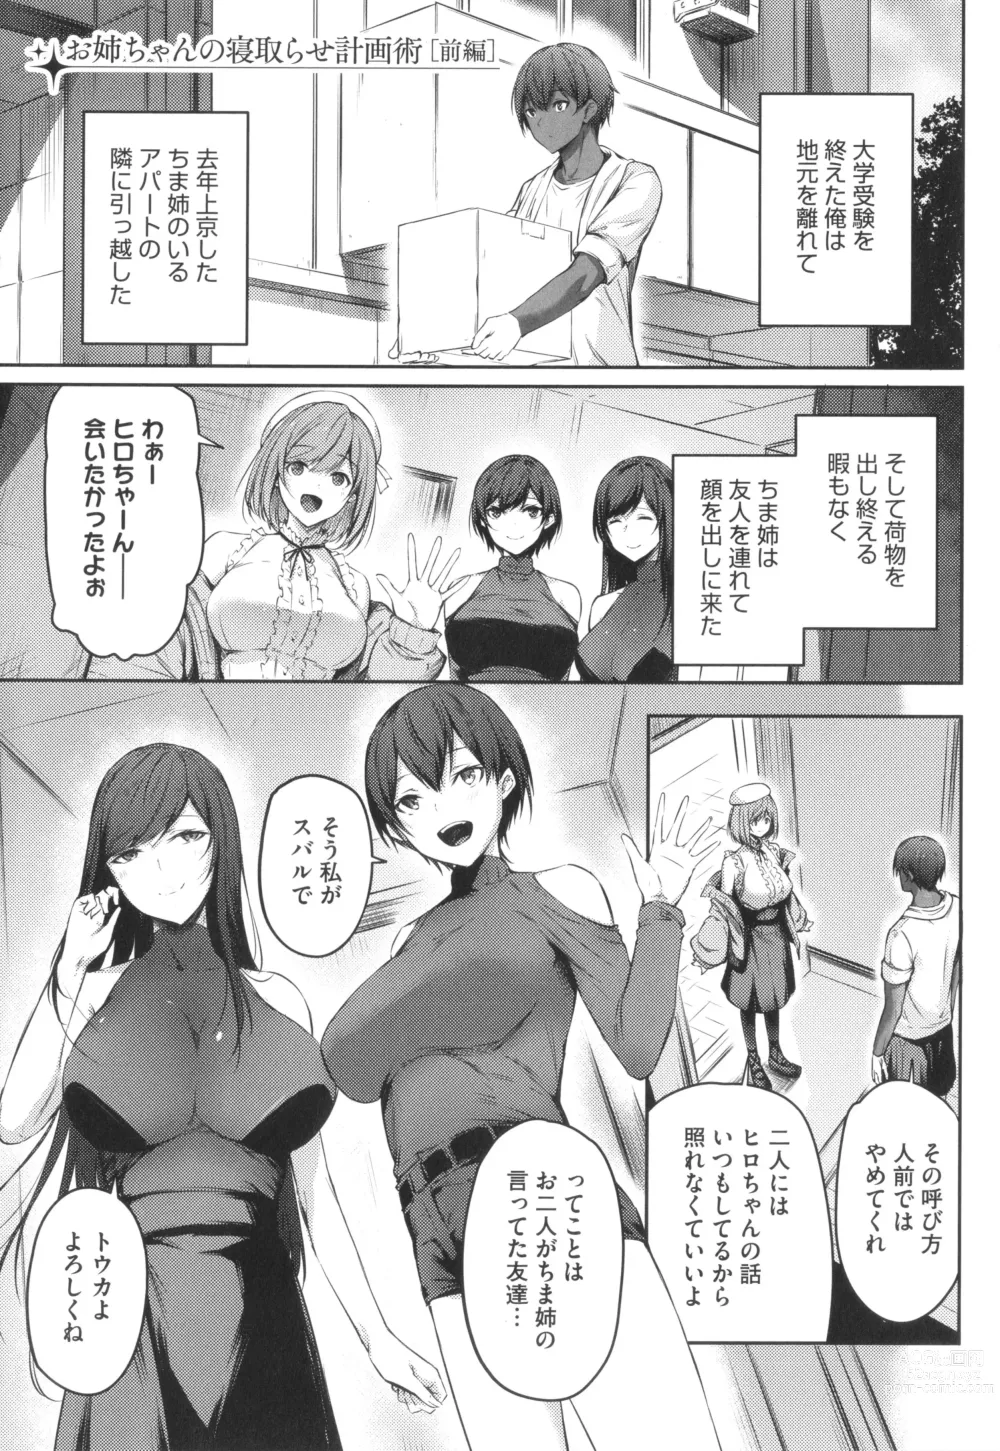 Page 4 of manga Karada Awase